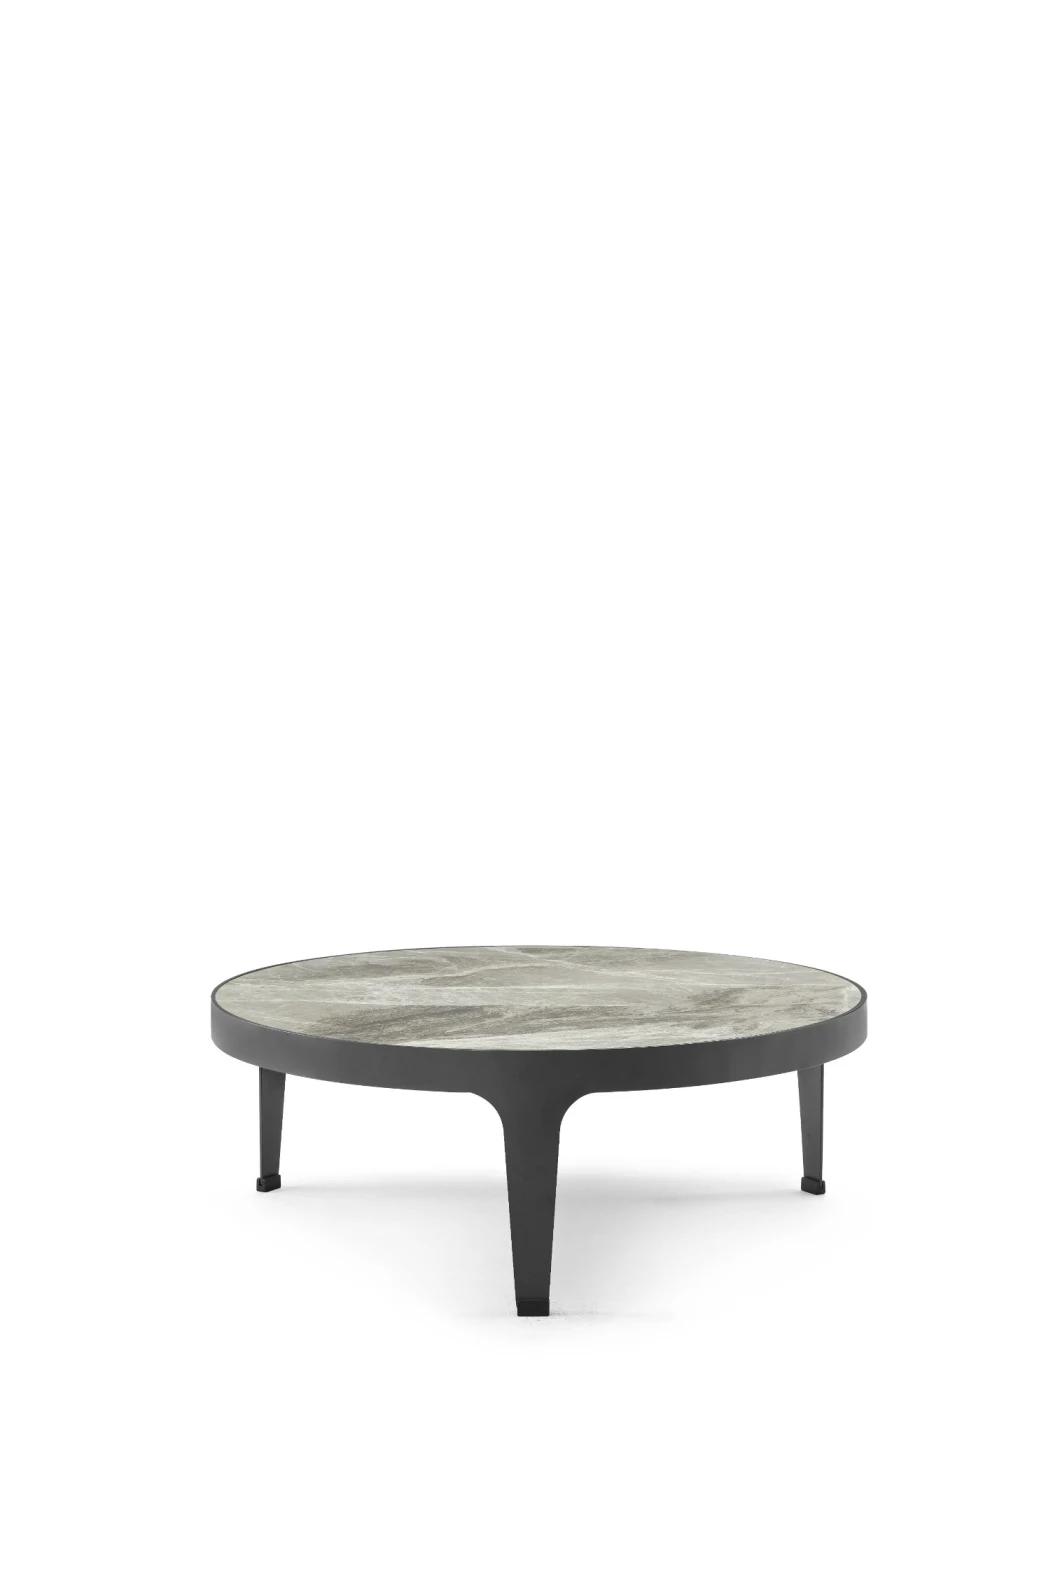 M-Cj003A Ceramic Coffee Table, Modern Design in Home and Hotel Furniture